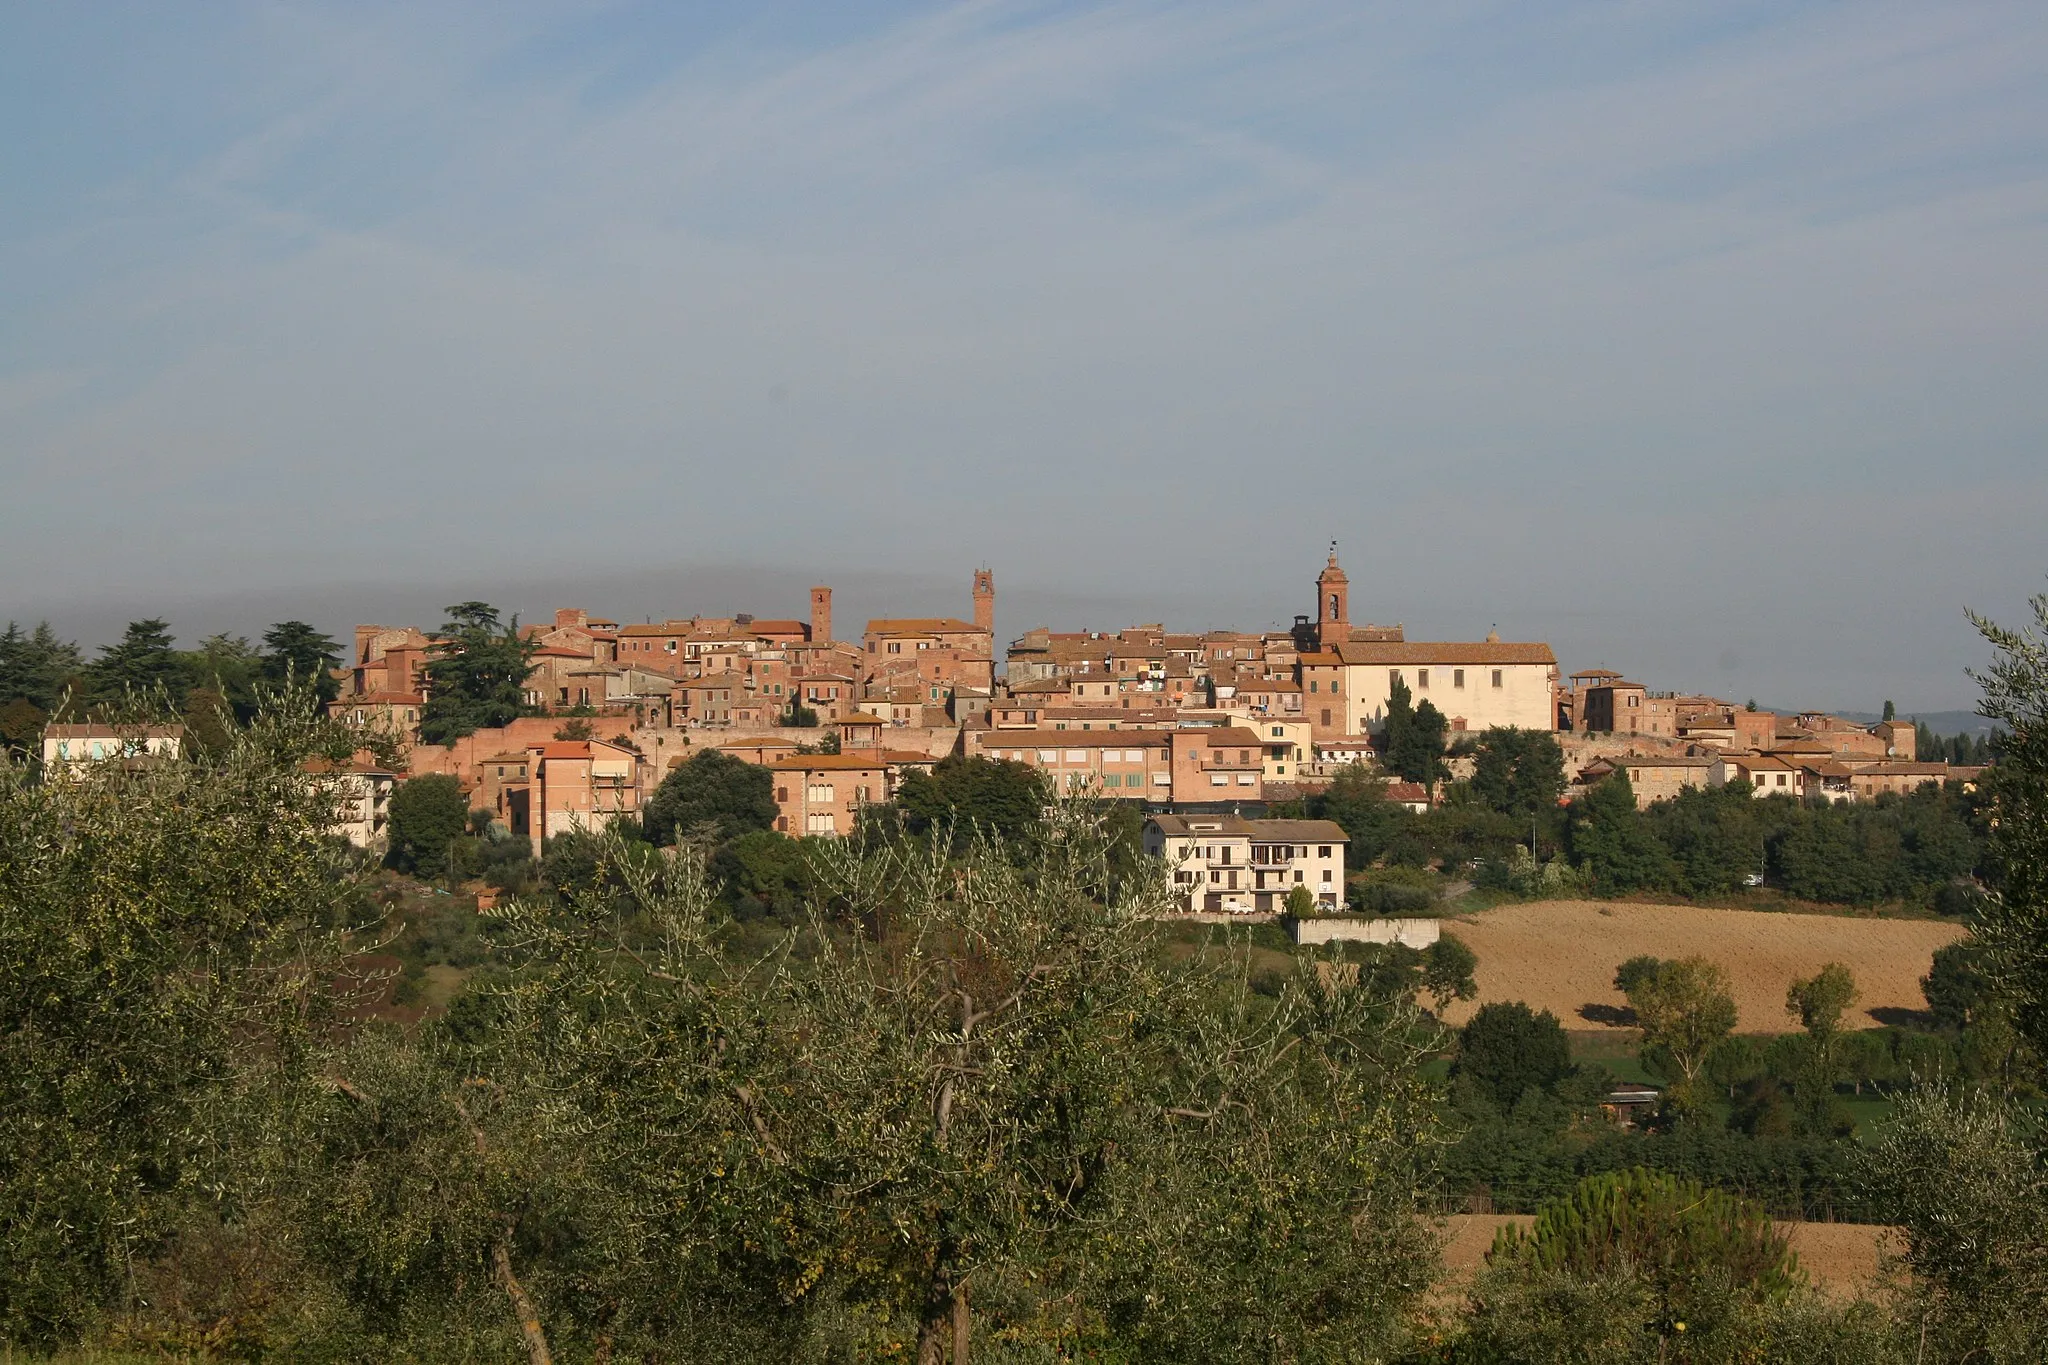 Imagen de Toscana